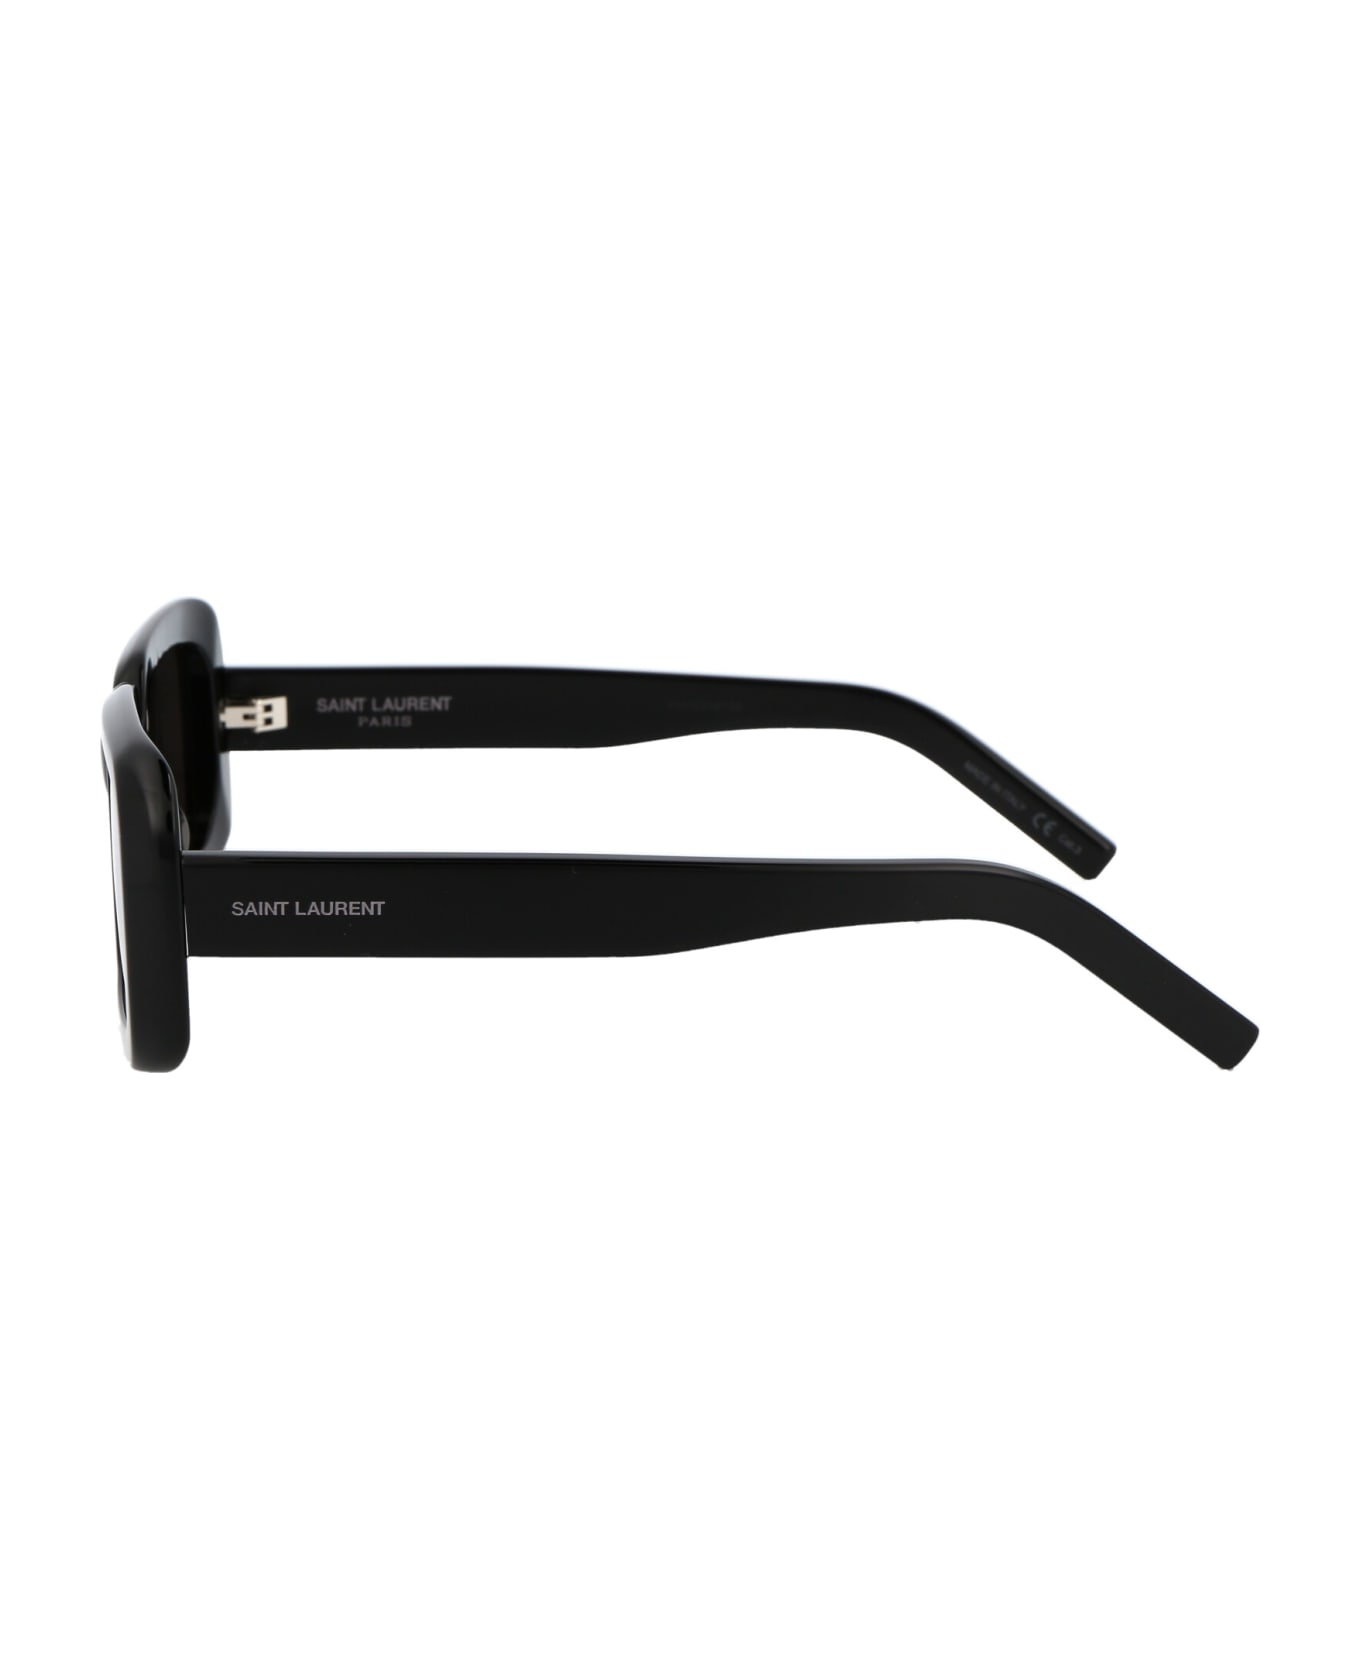 Saint Laurent Eyewear Sl 534 Sunrise Sunglasses - 001 BLACK BLACK BLACK サングラス